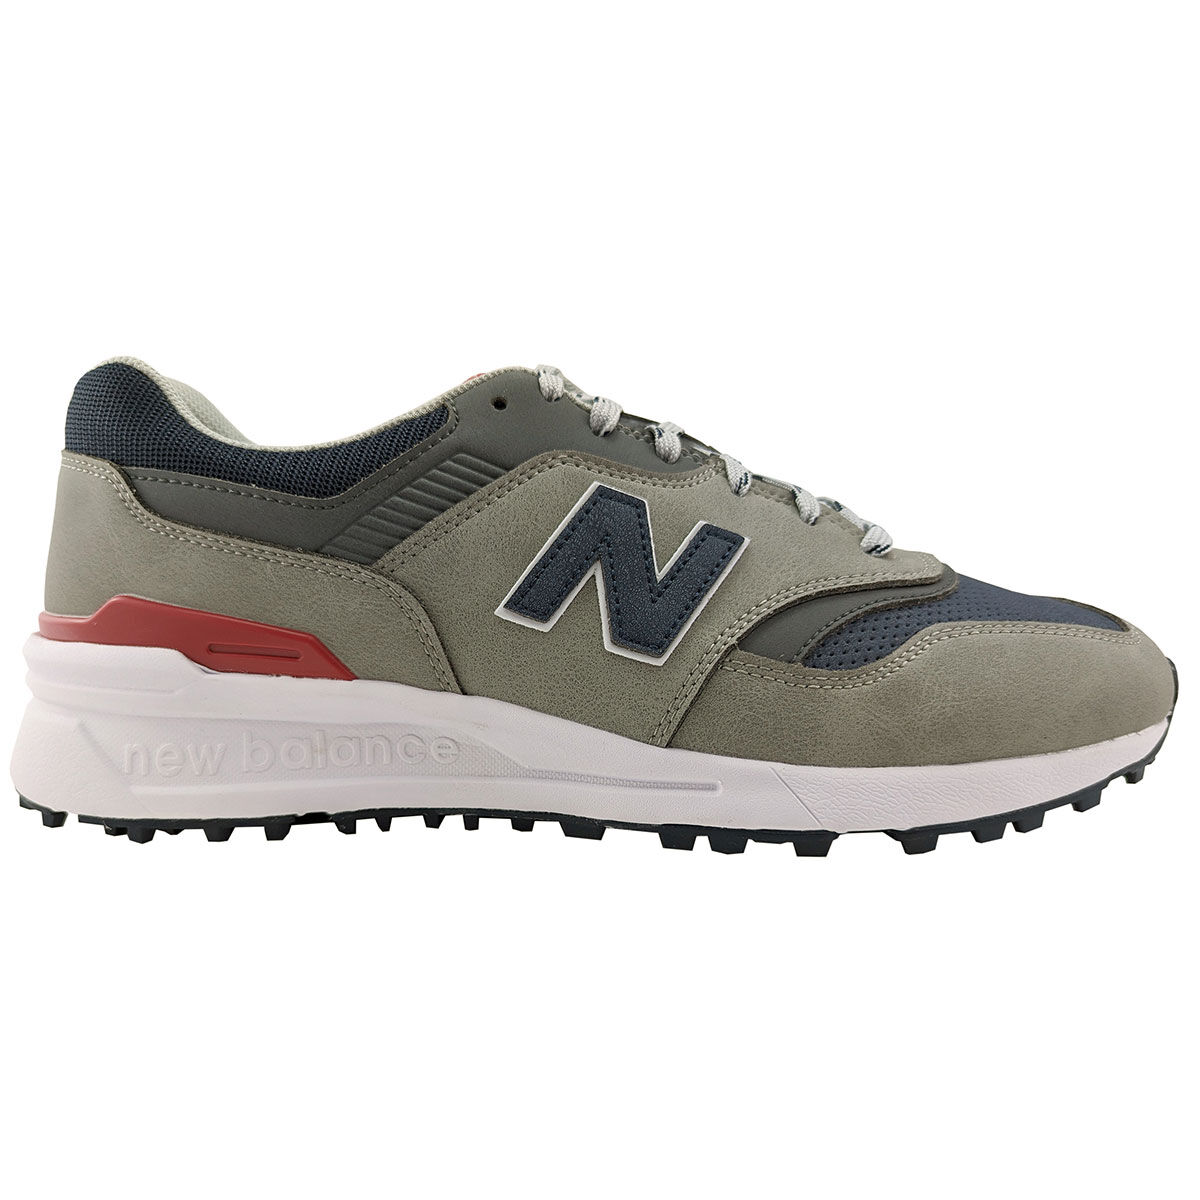 New Balance Men’s 997 Waterproof Spikeless Golf Shoes, Mens, Grey/navy, 7 | American Golf